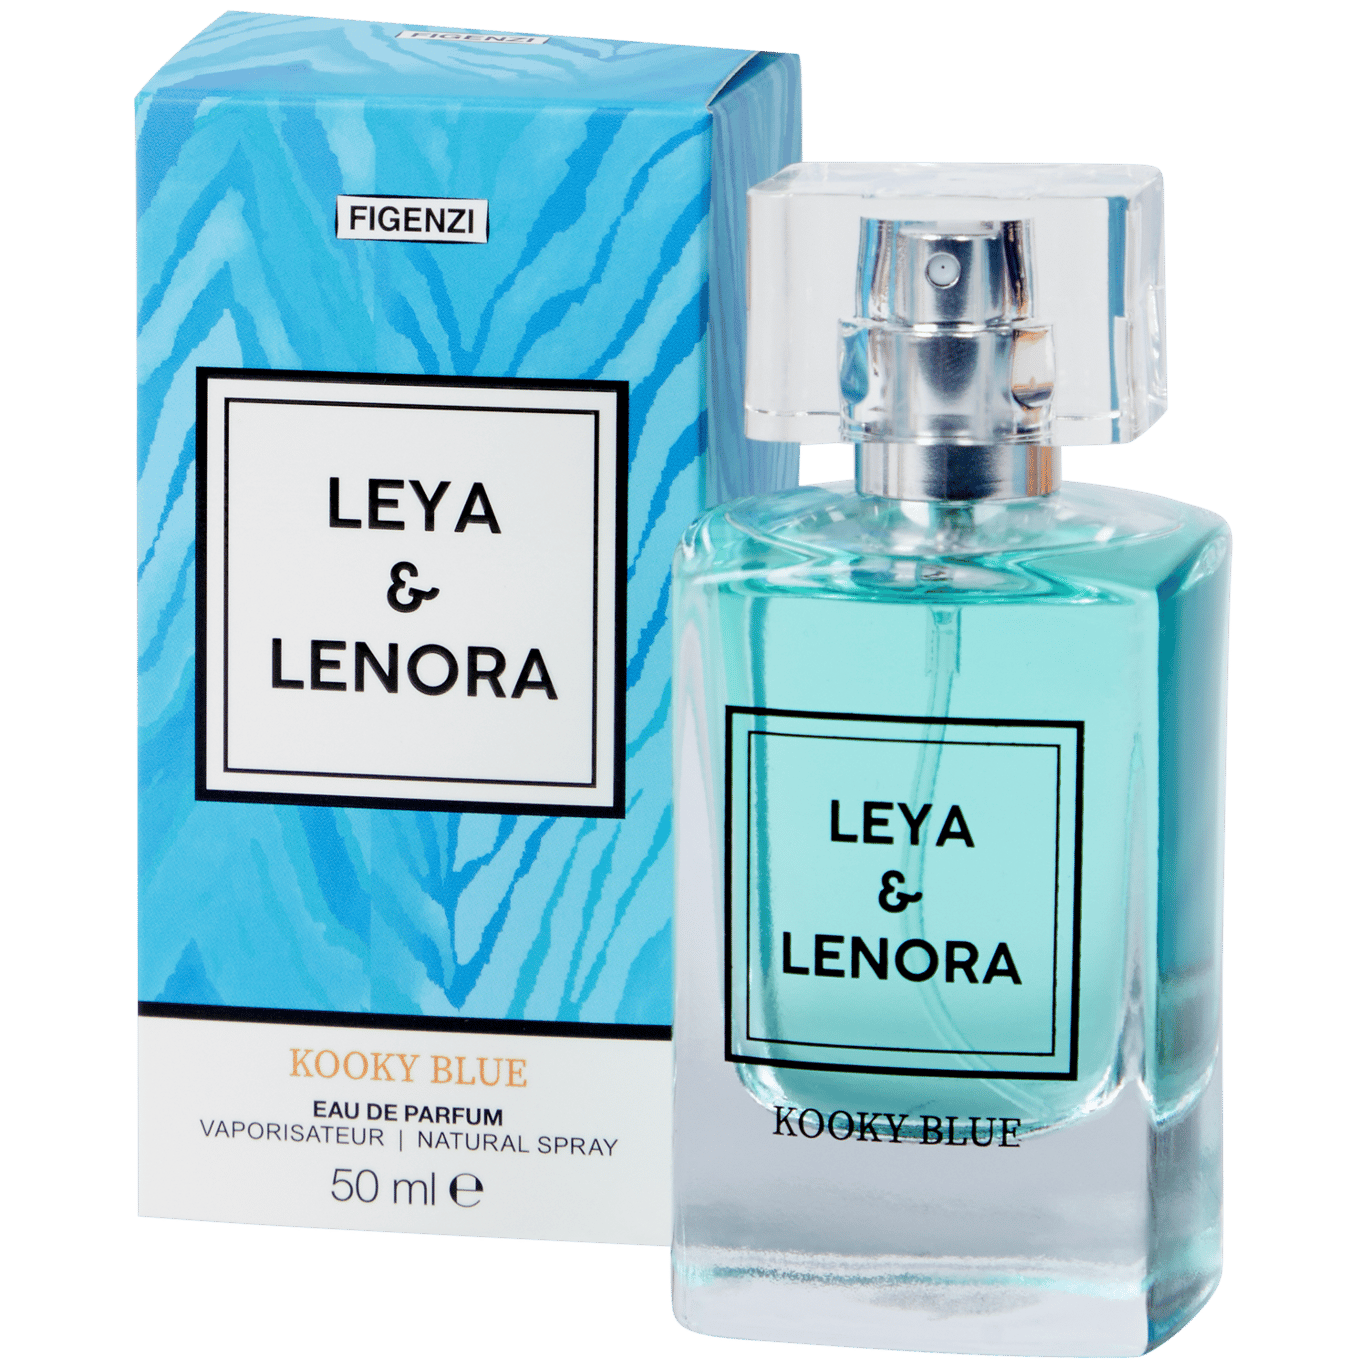 Eau de parfum Figenzi Leya & Lenora